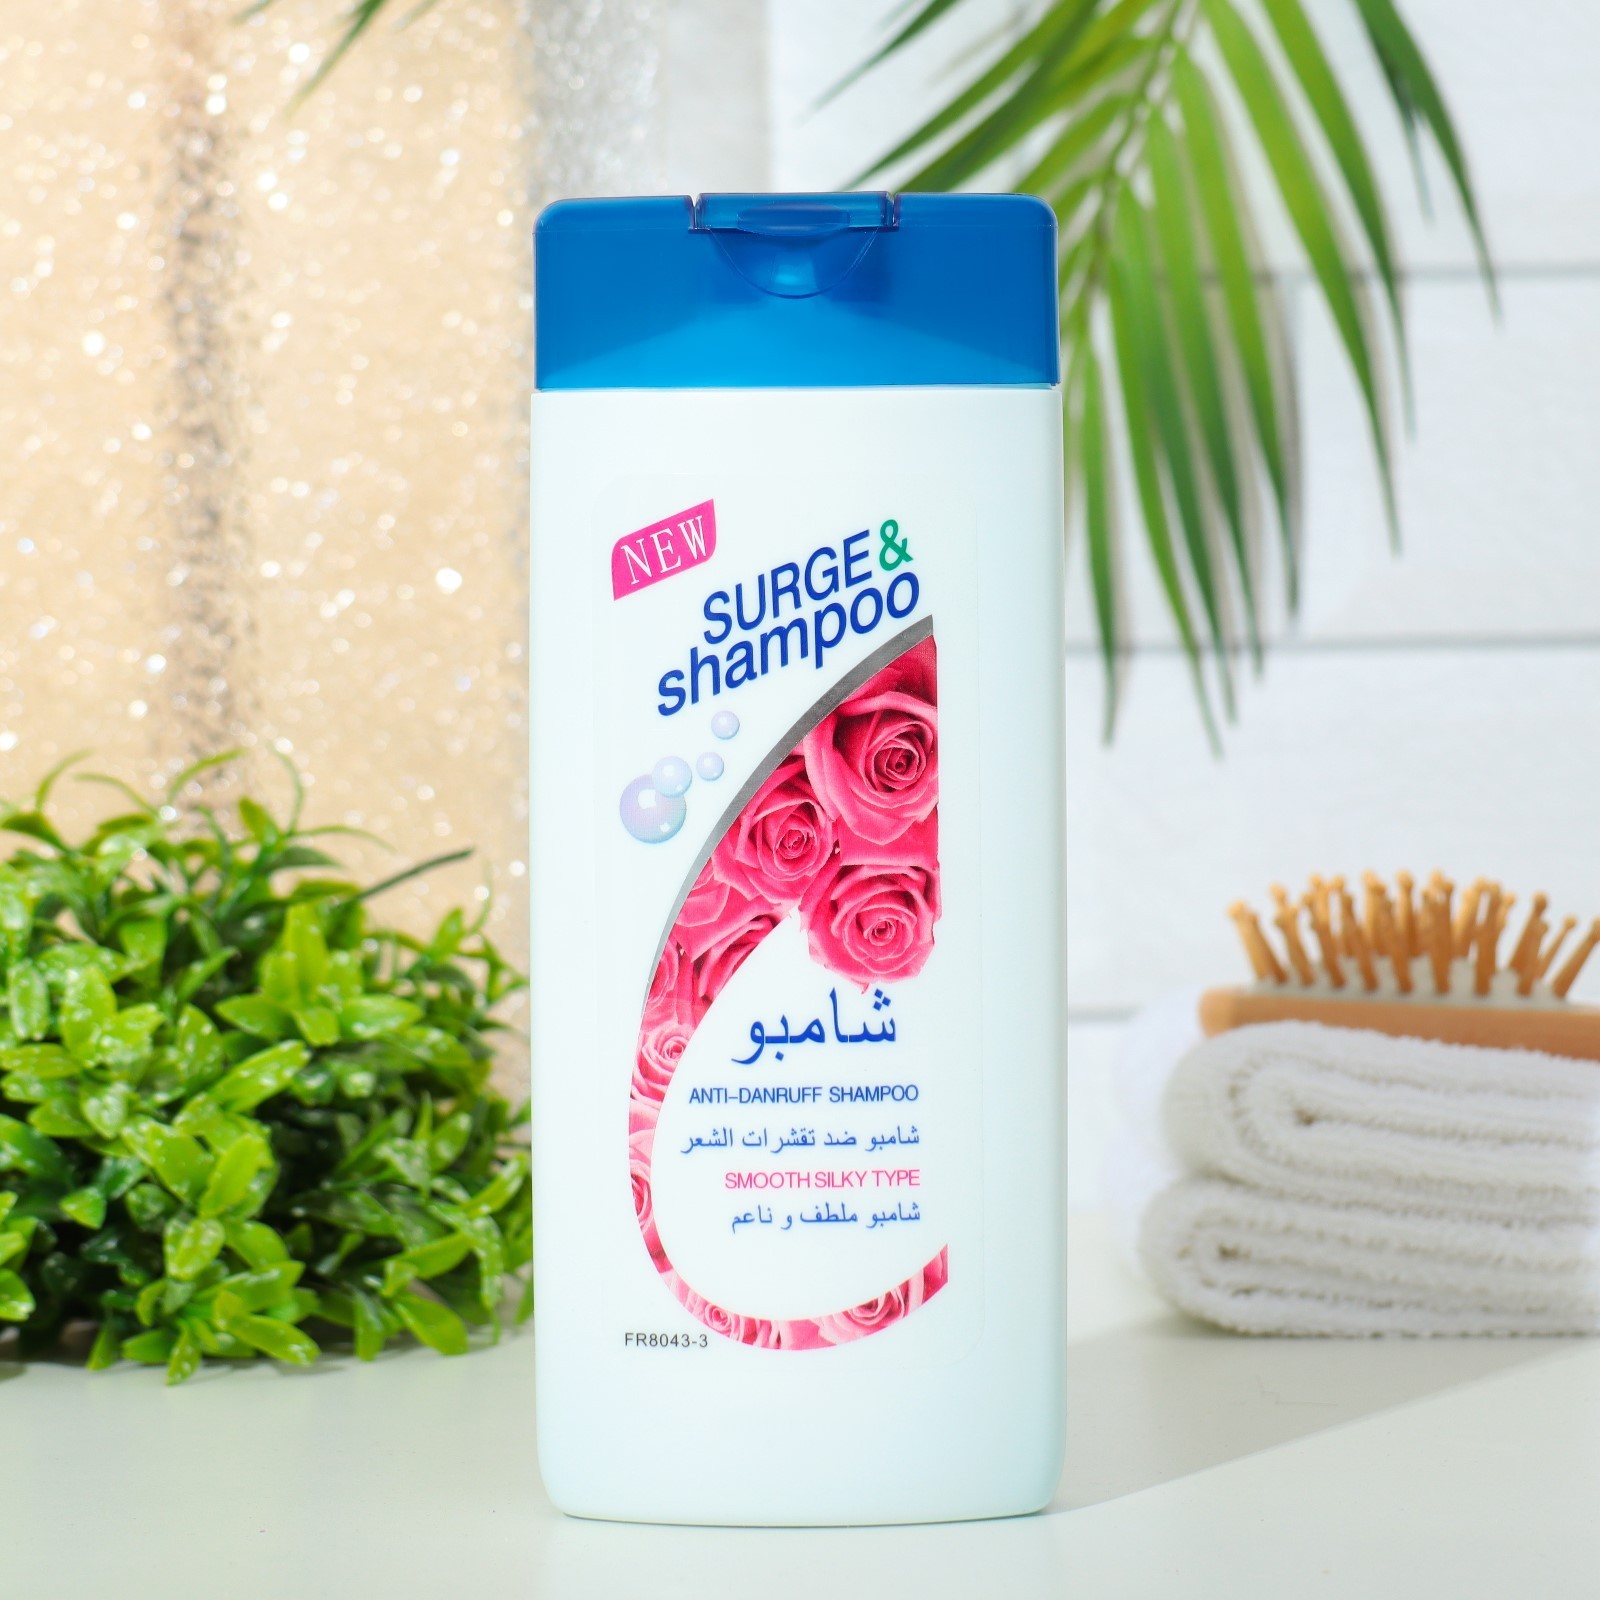 Шампунь Surge&shampoo для волос с розой 400 мл природный биорегулятор для борьбы с насекомыми и вредителями эм 5 0 25 л